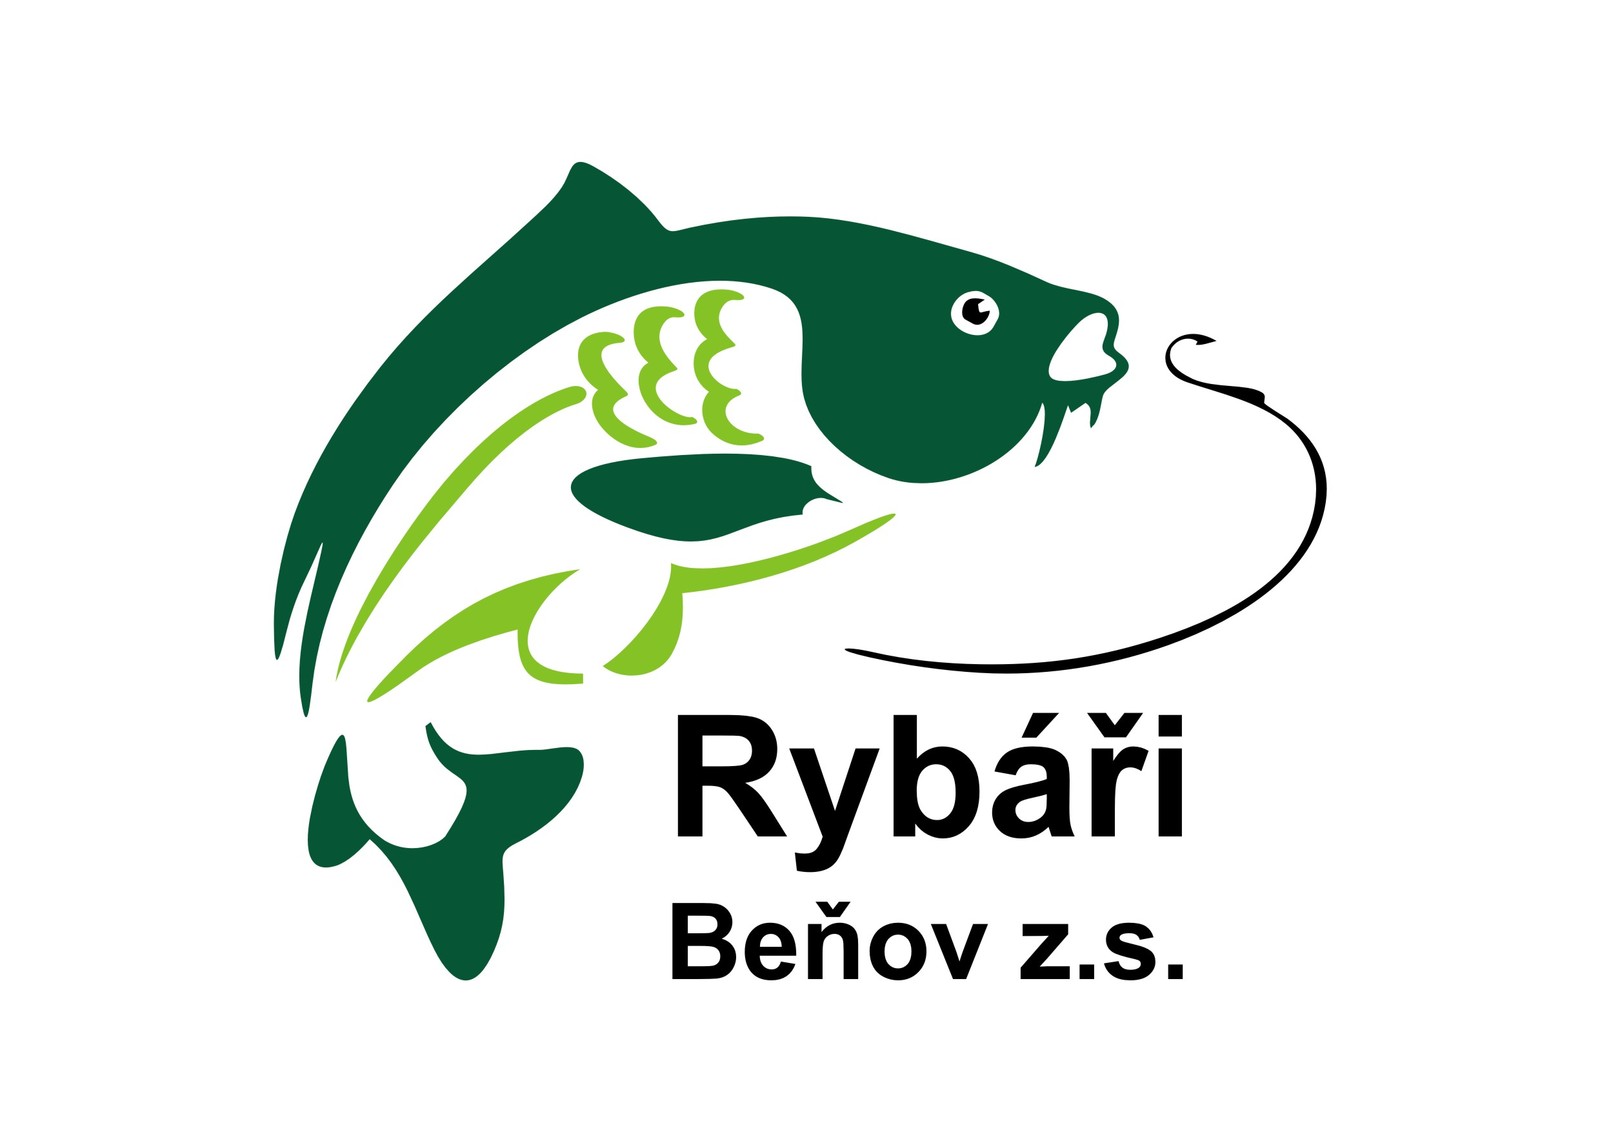 Rybari Benov logo.jpg